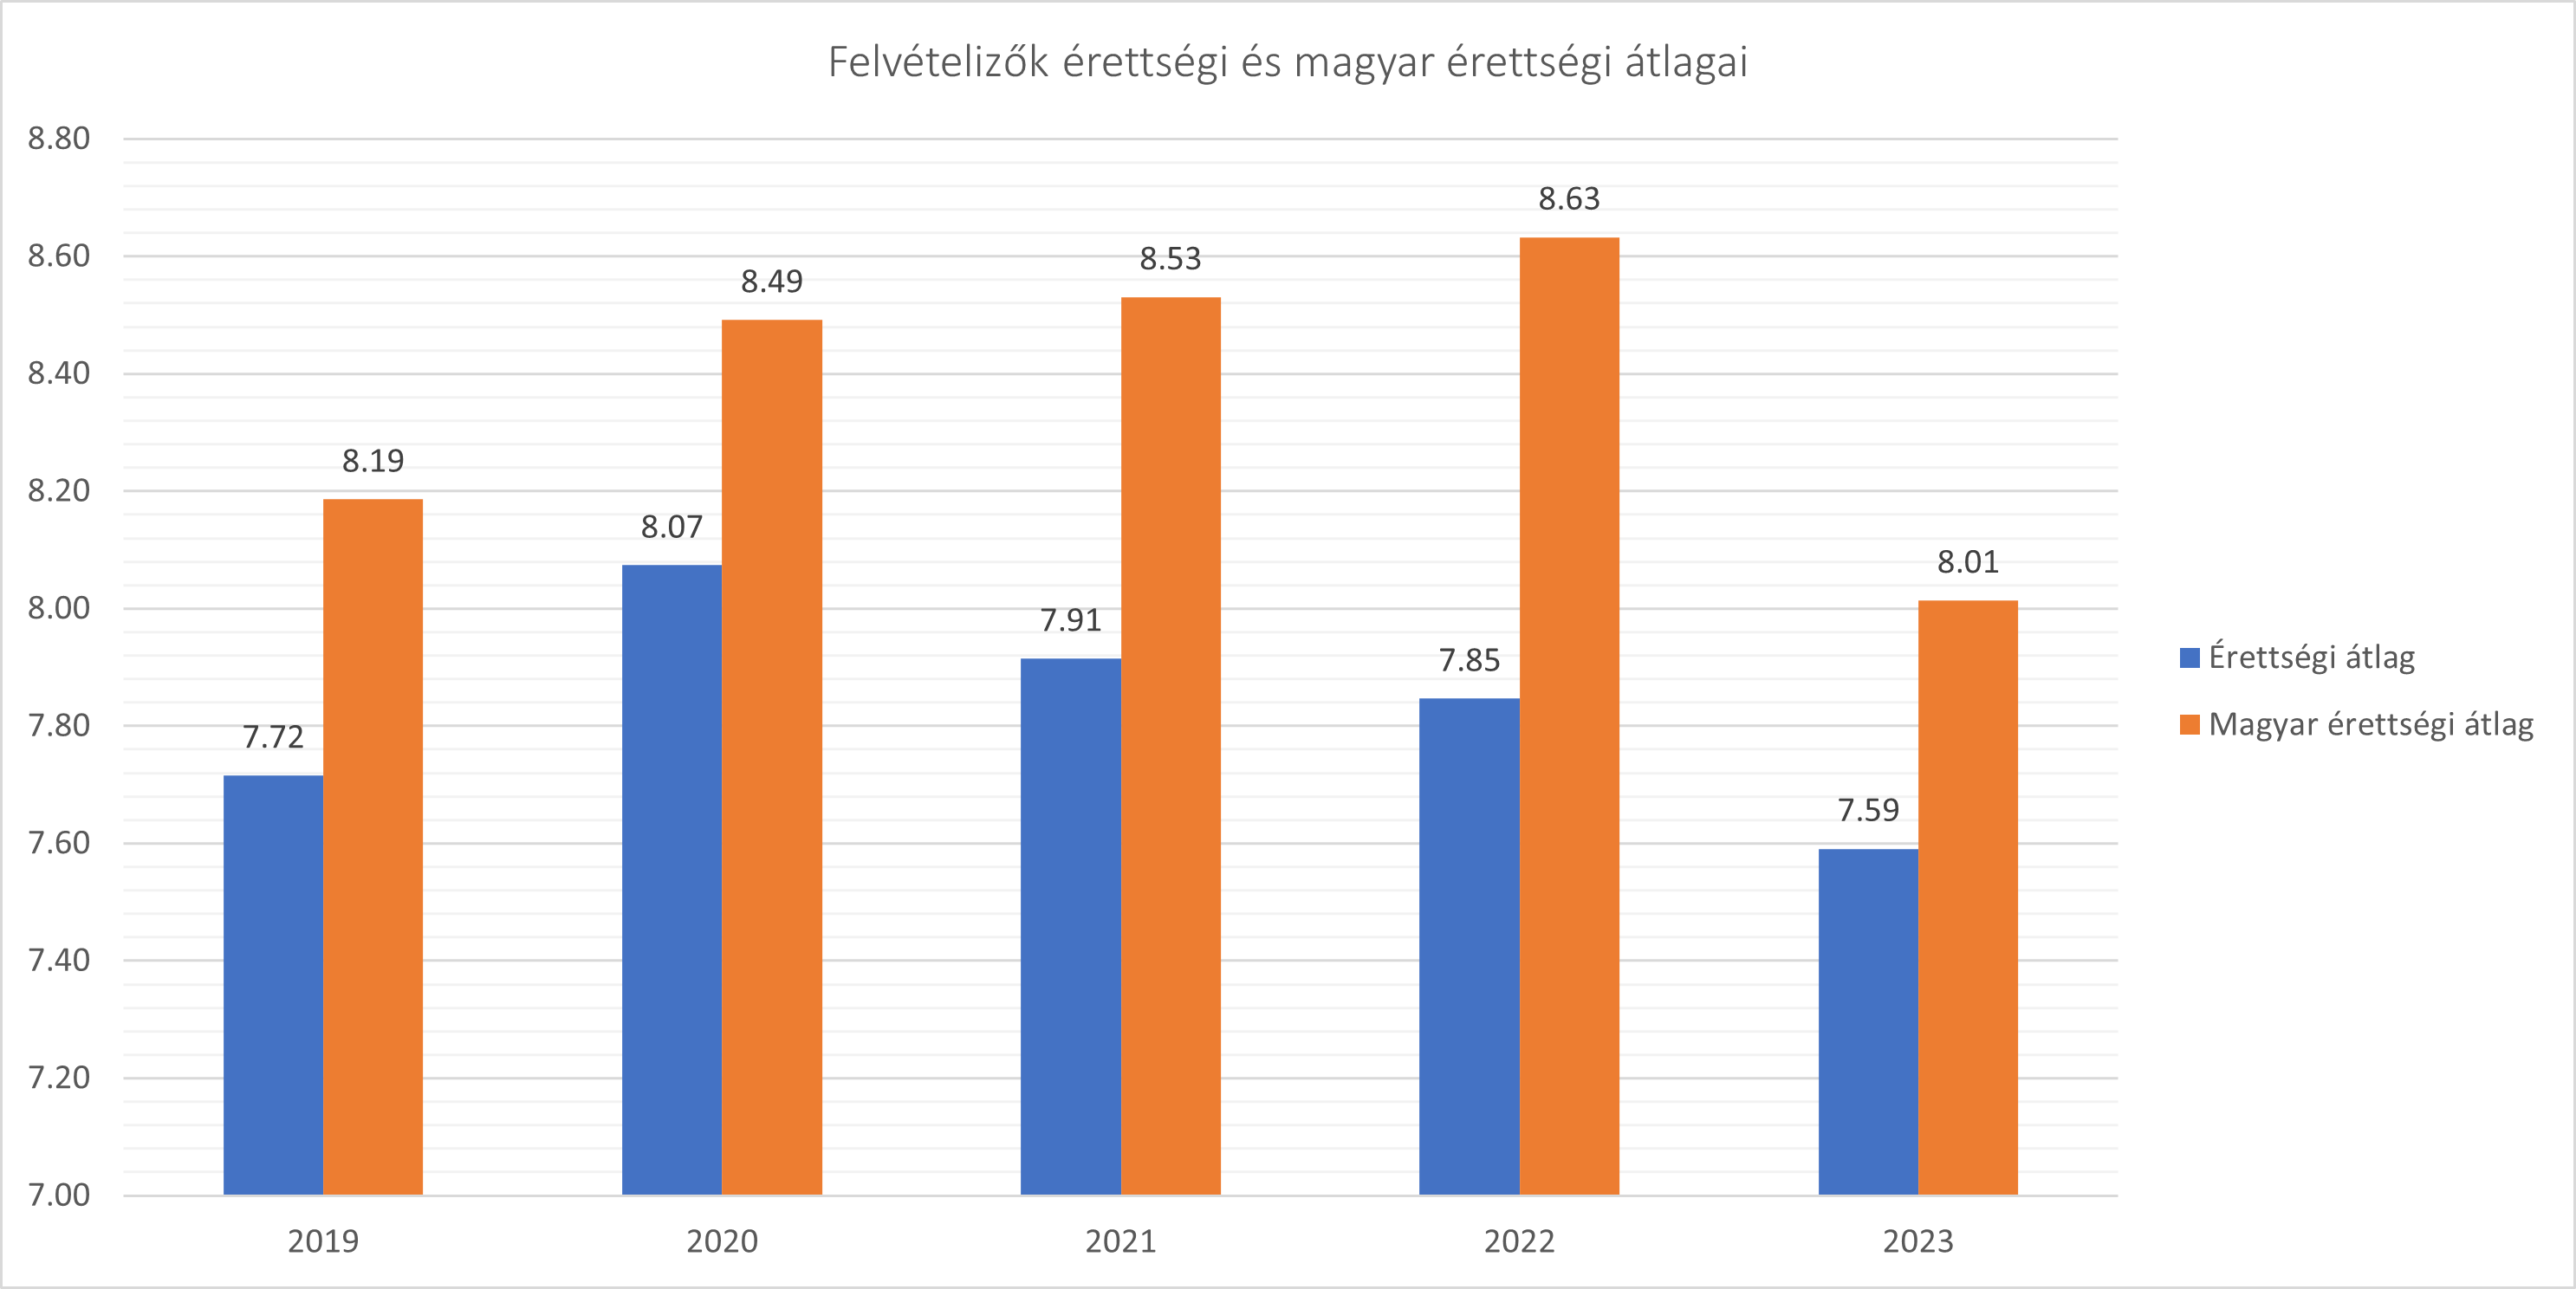 2019-2023 között felvételizők érettségi és magyar érettségi átlagainak alakulása